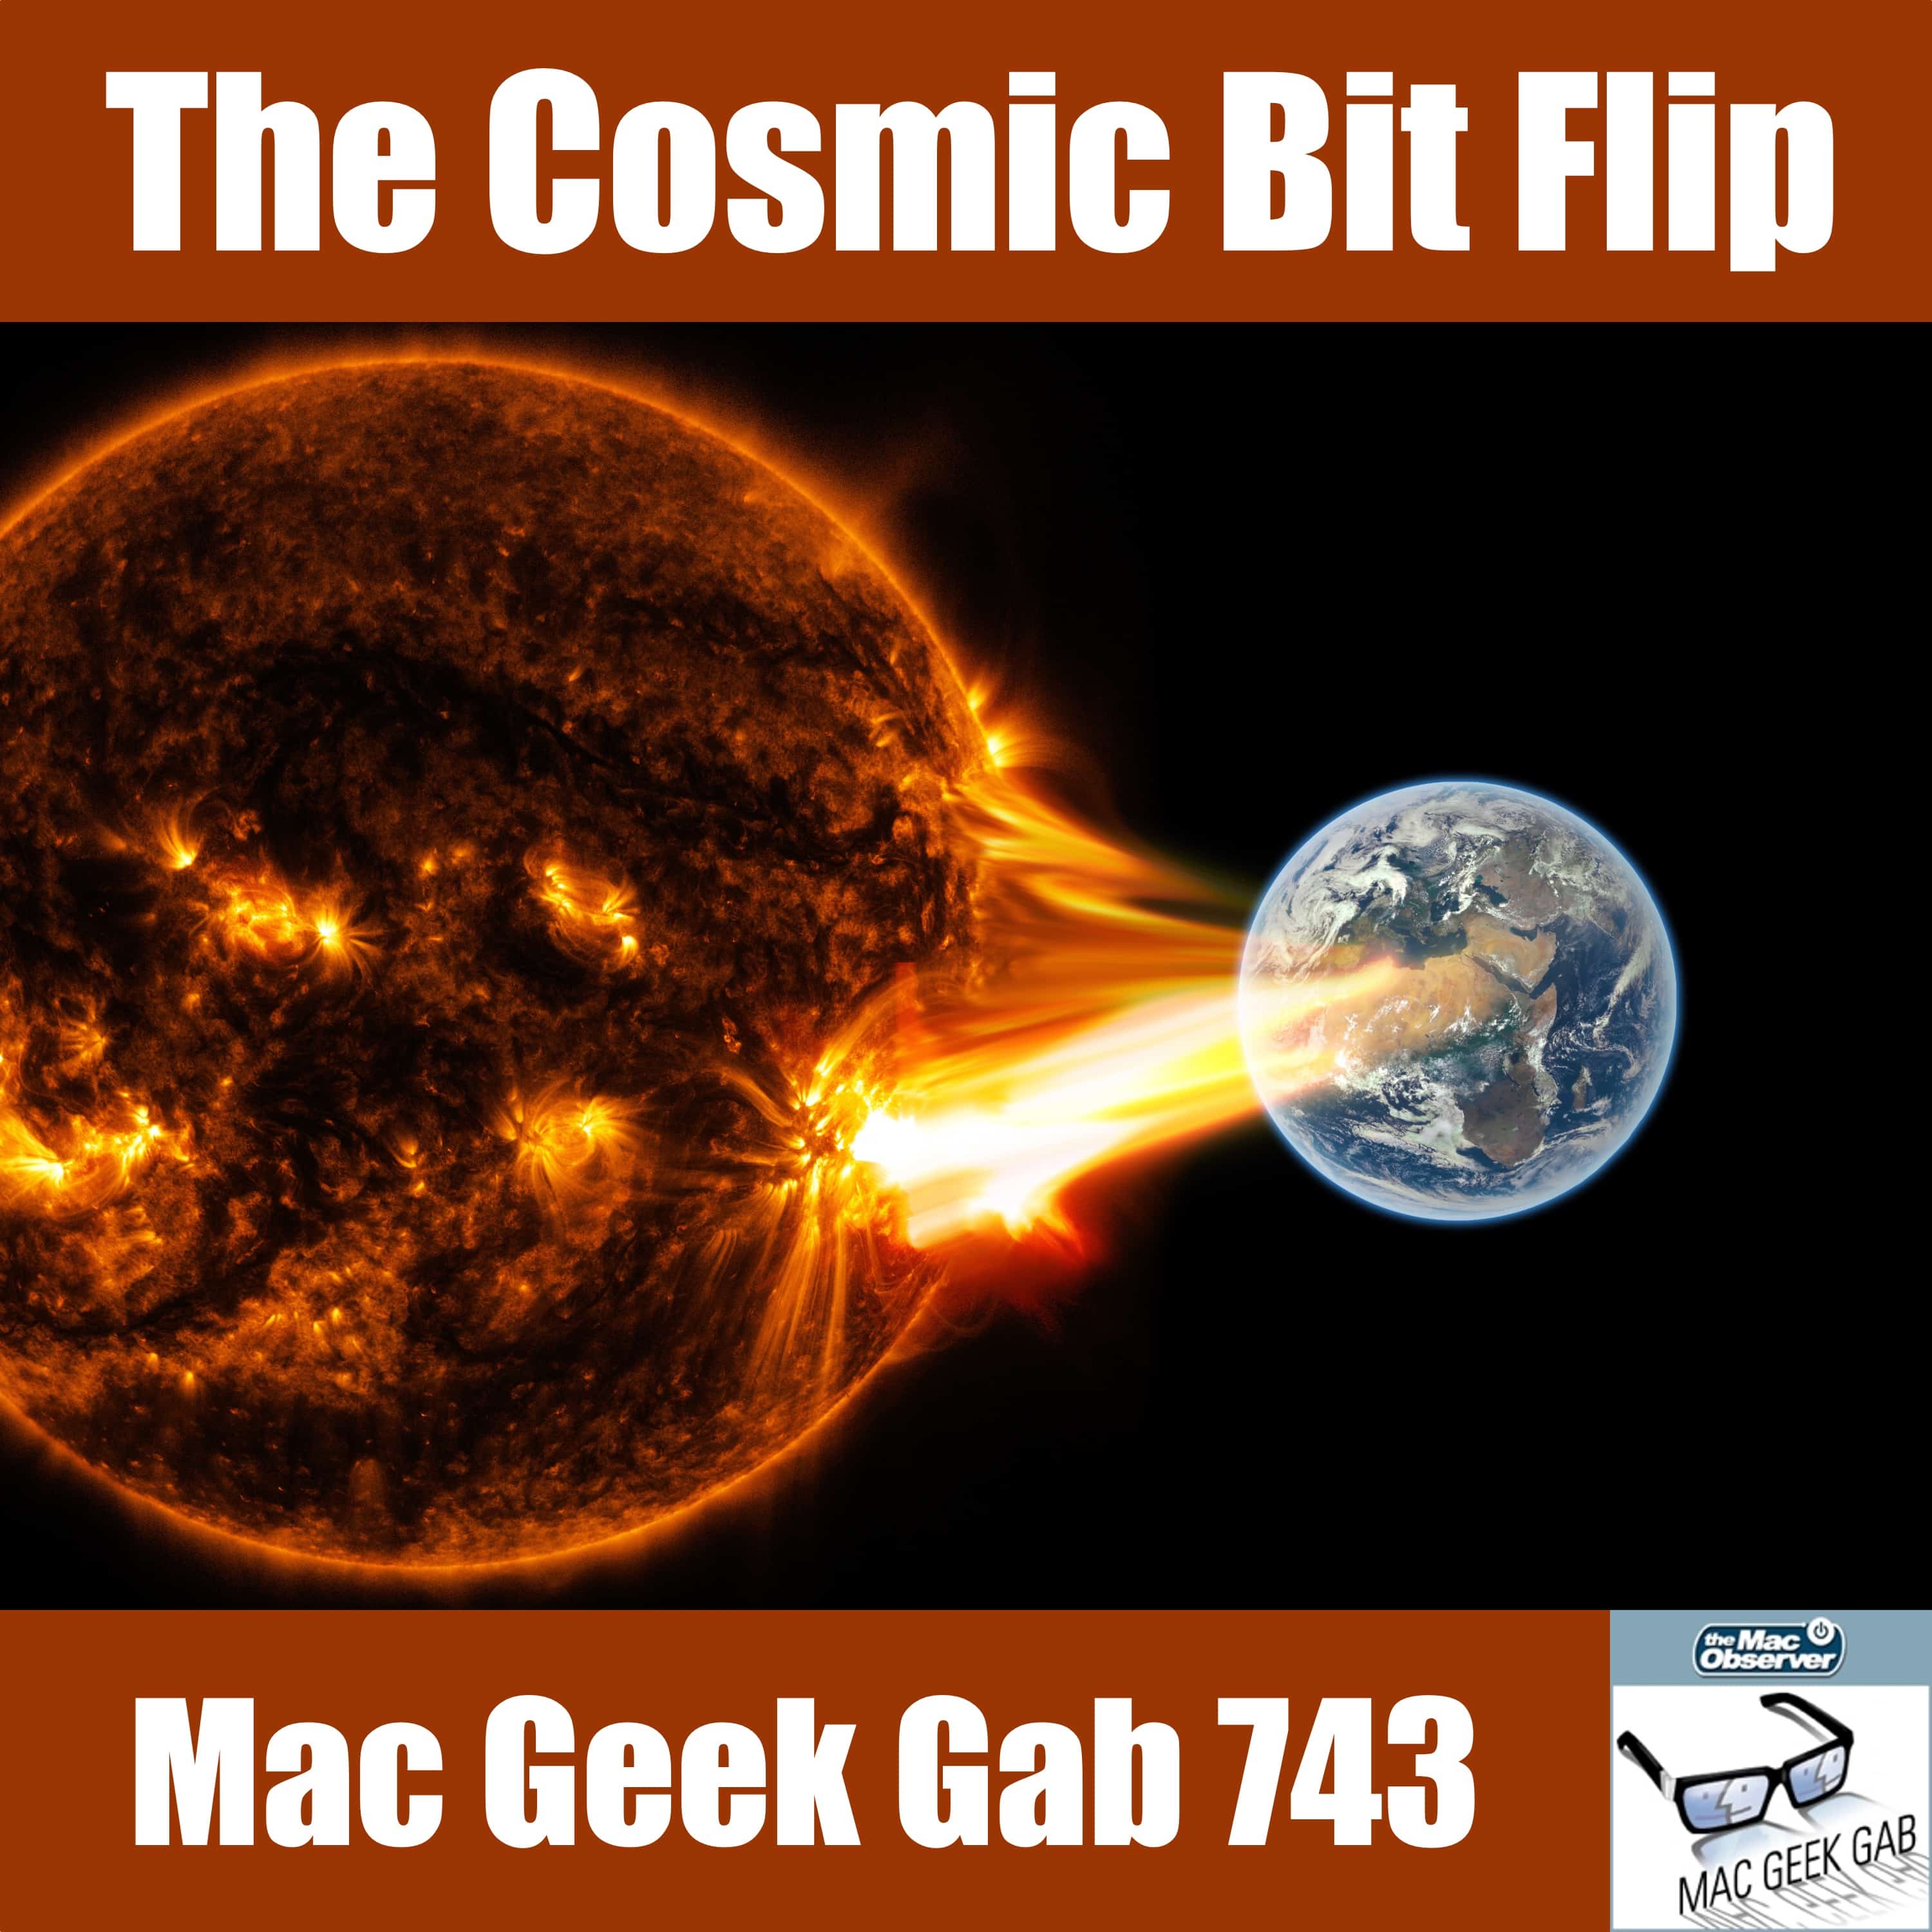 The Cosmic Bit Flip – Mac Geek Gab 743